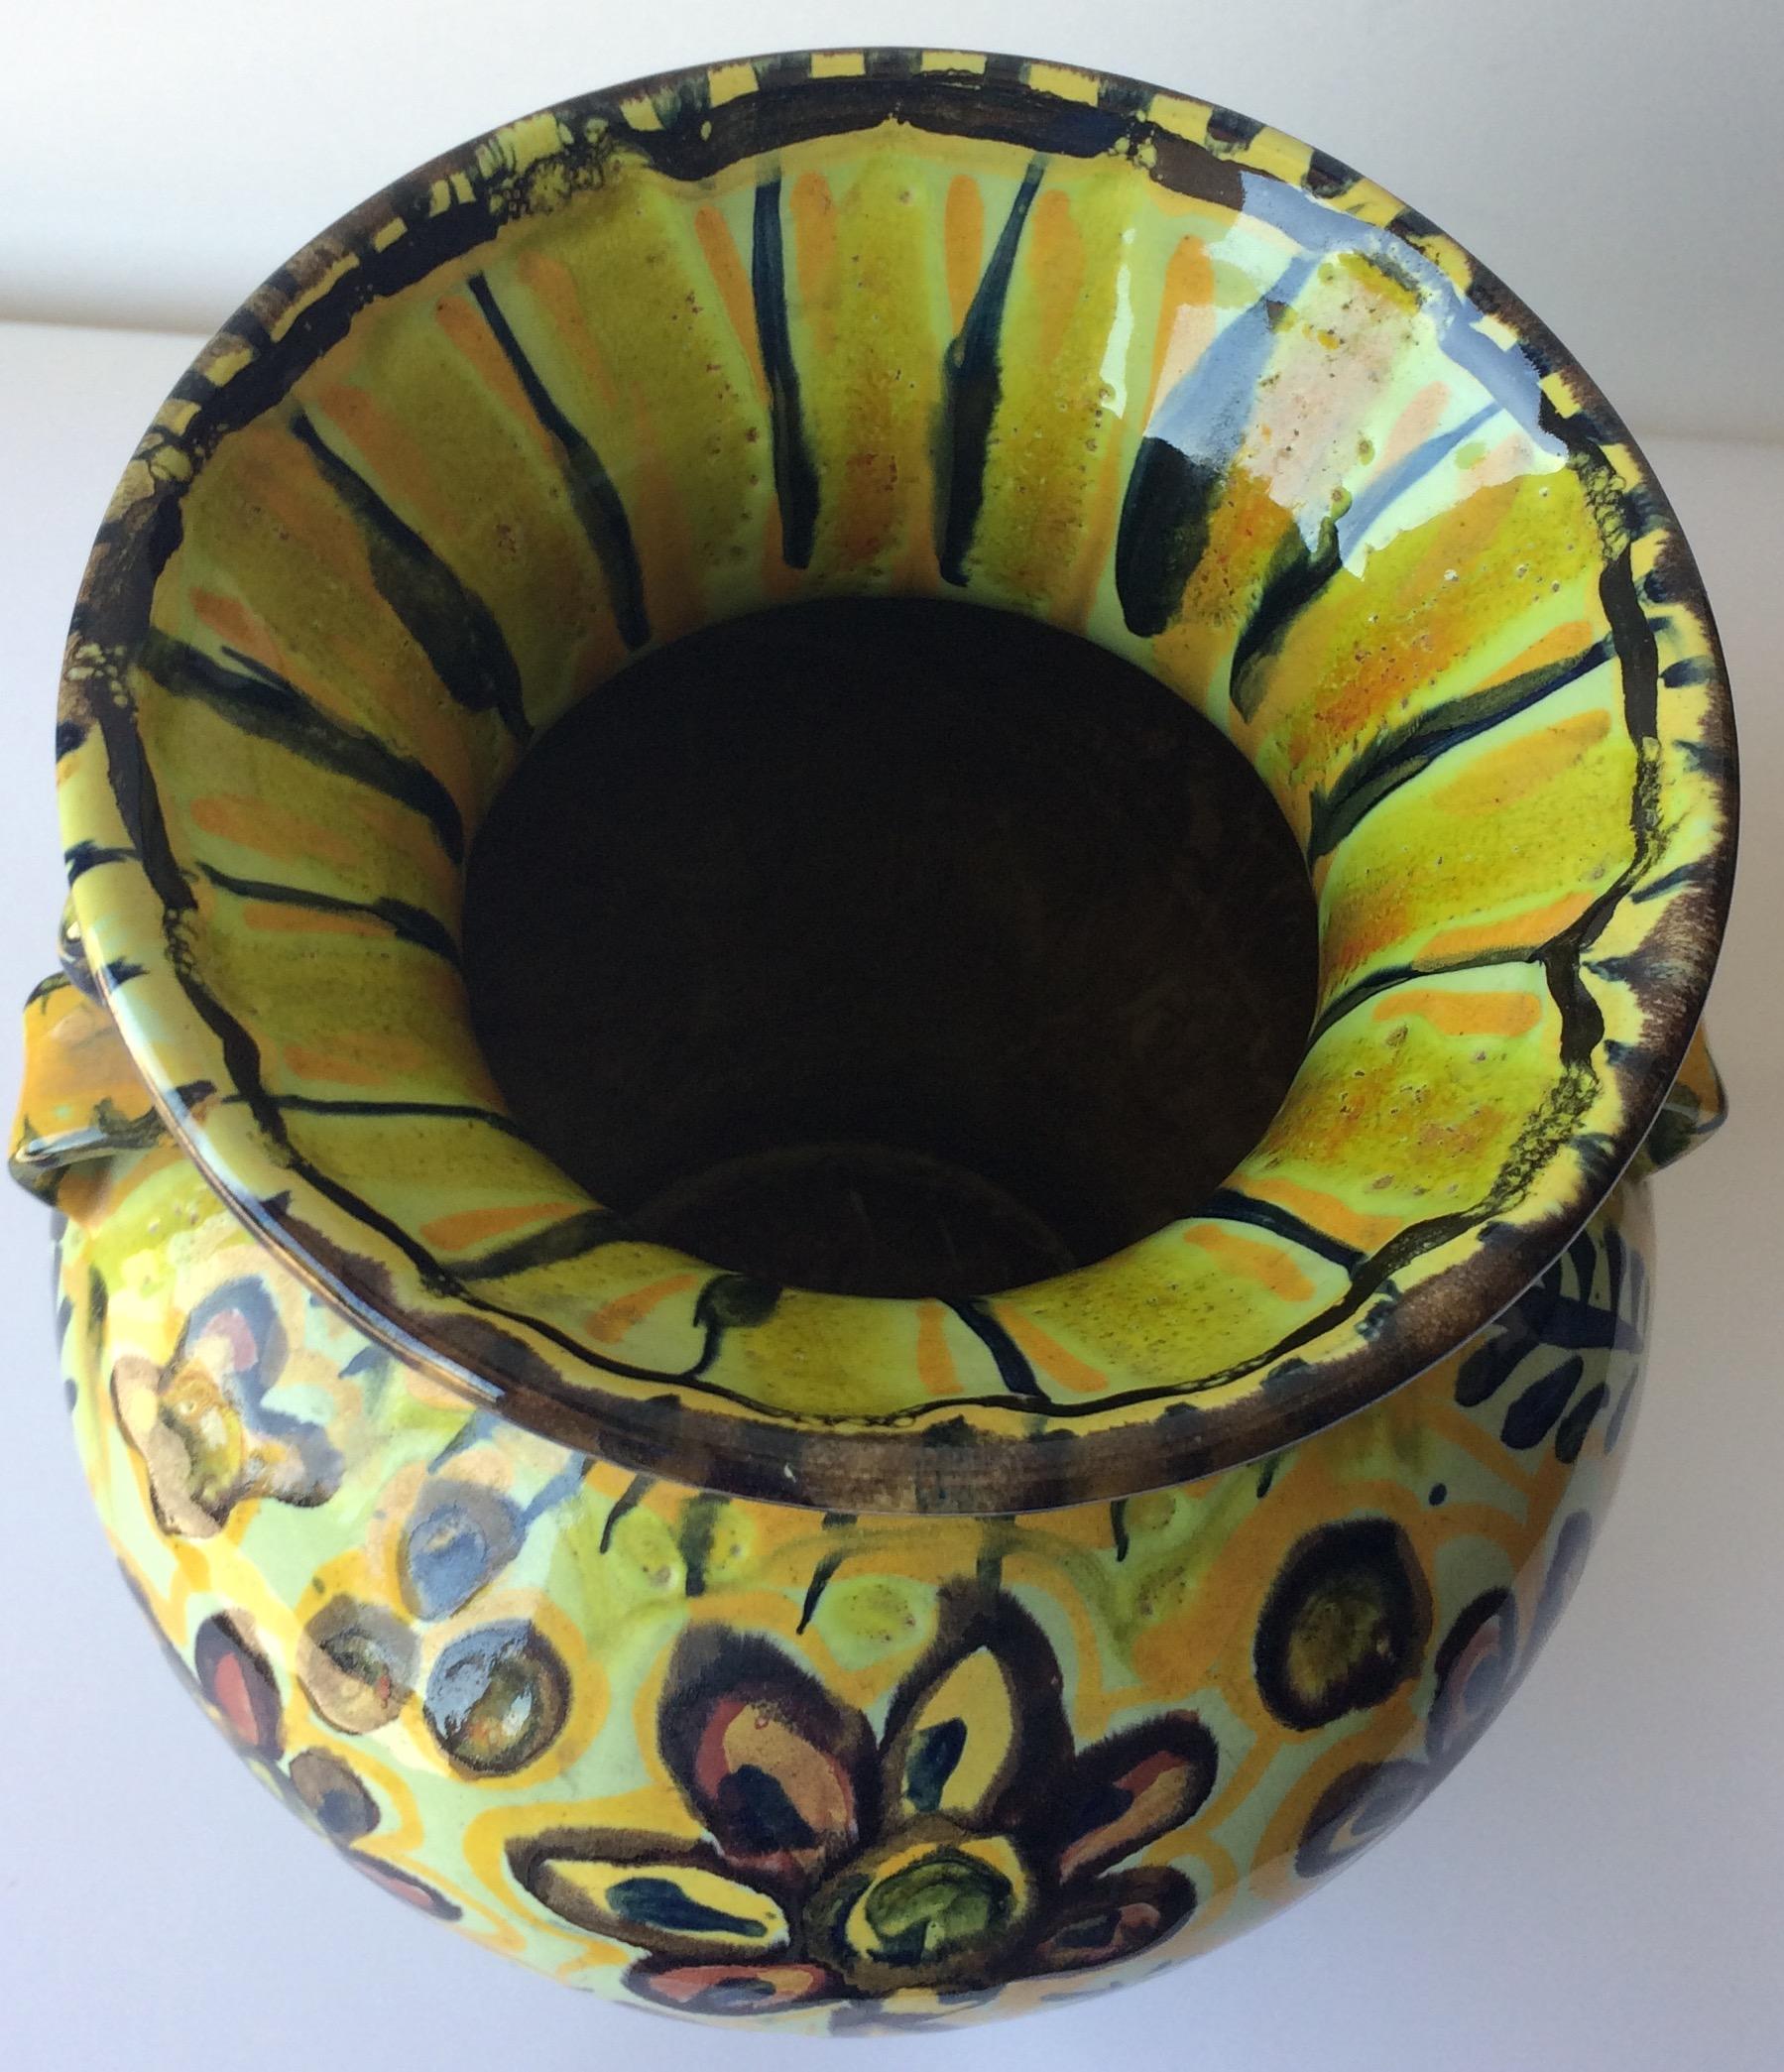 Schillernde glasierte Keramikvase, deren primäres Hellgelb und die floralen Muster ein echter Blickfang sind. Hergestellt in Quimper, Frankreich von Keraluc Pottery Studio. 

Er kann jedes Regal, jeden Tisch, jede Anrichte oder Arbeitsplatte